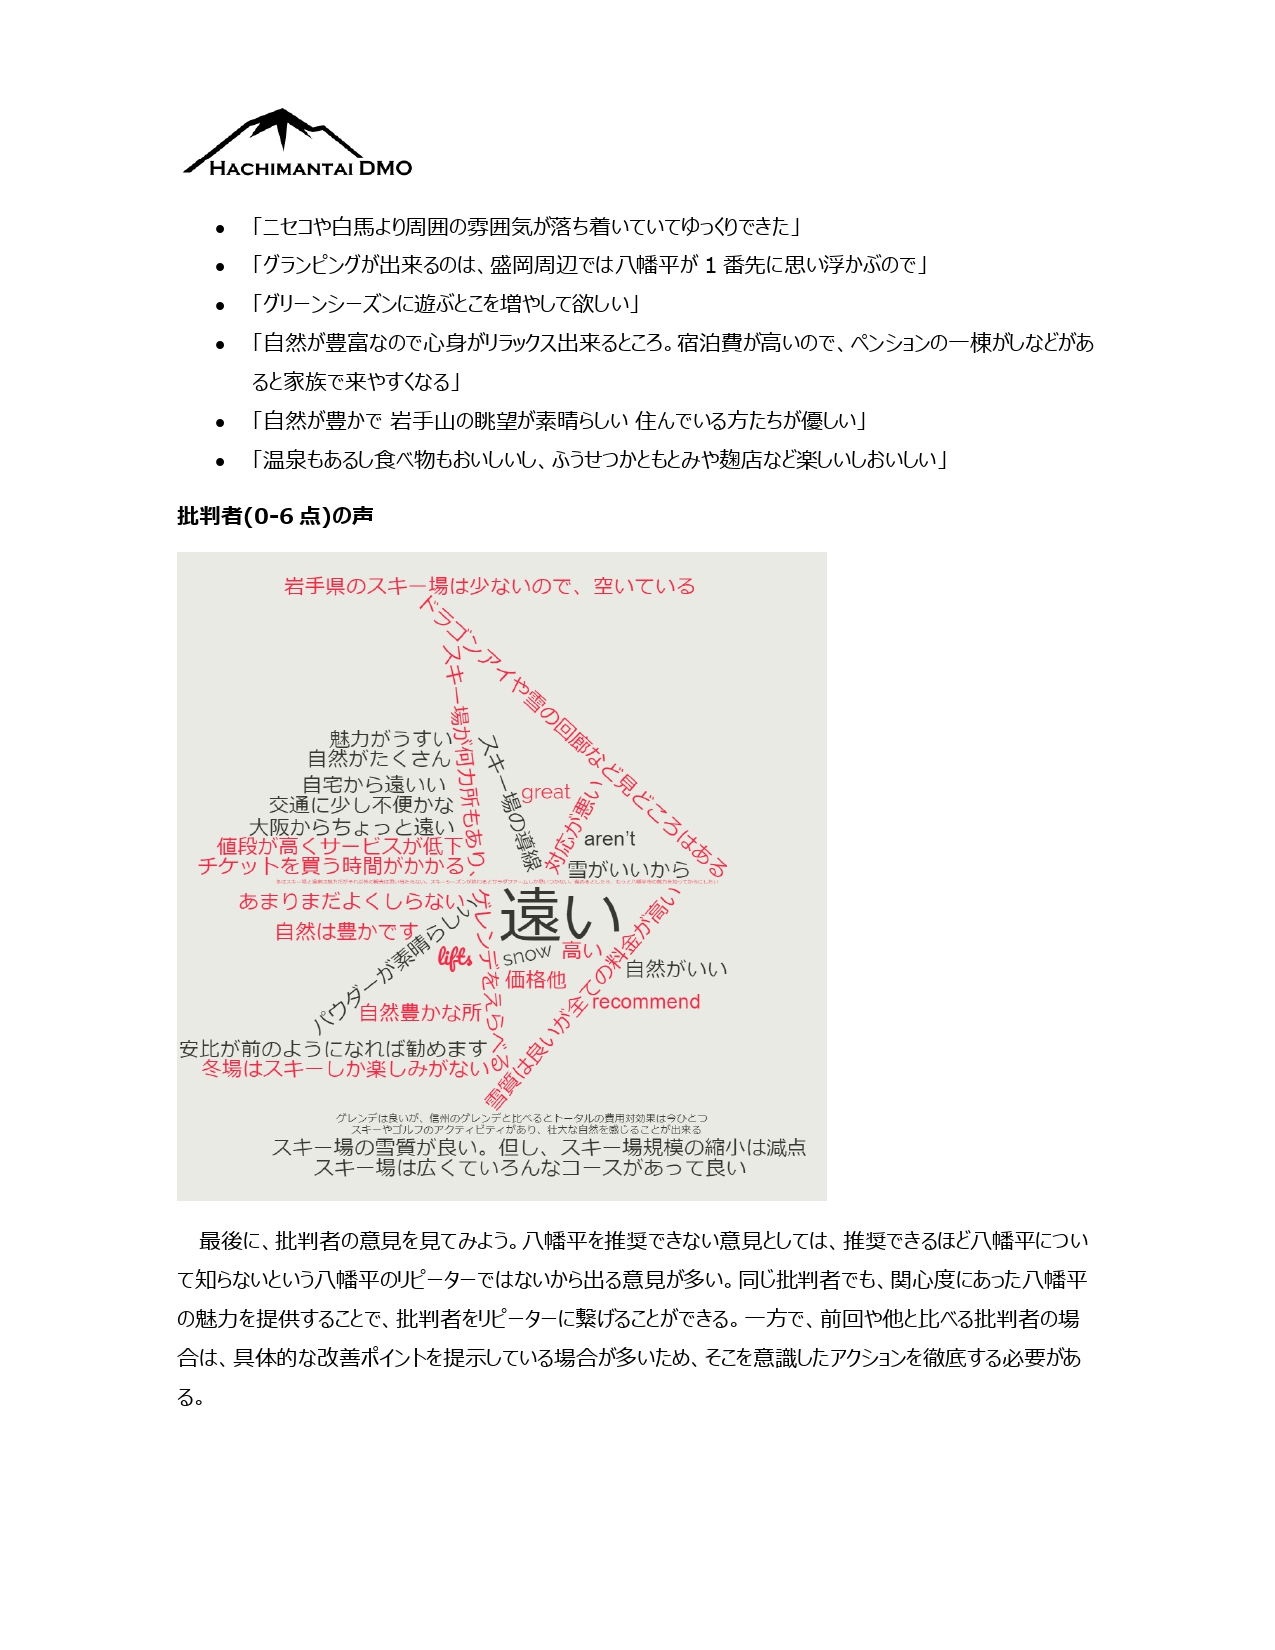 八幡平DMOマンスリーレポート 1月_page-0011